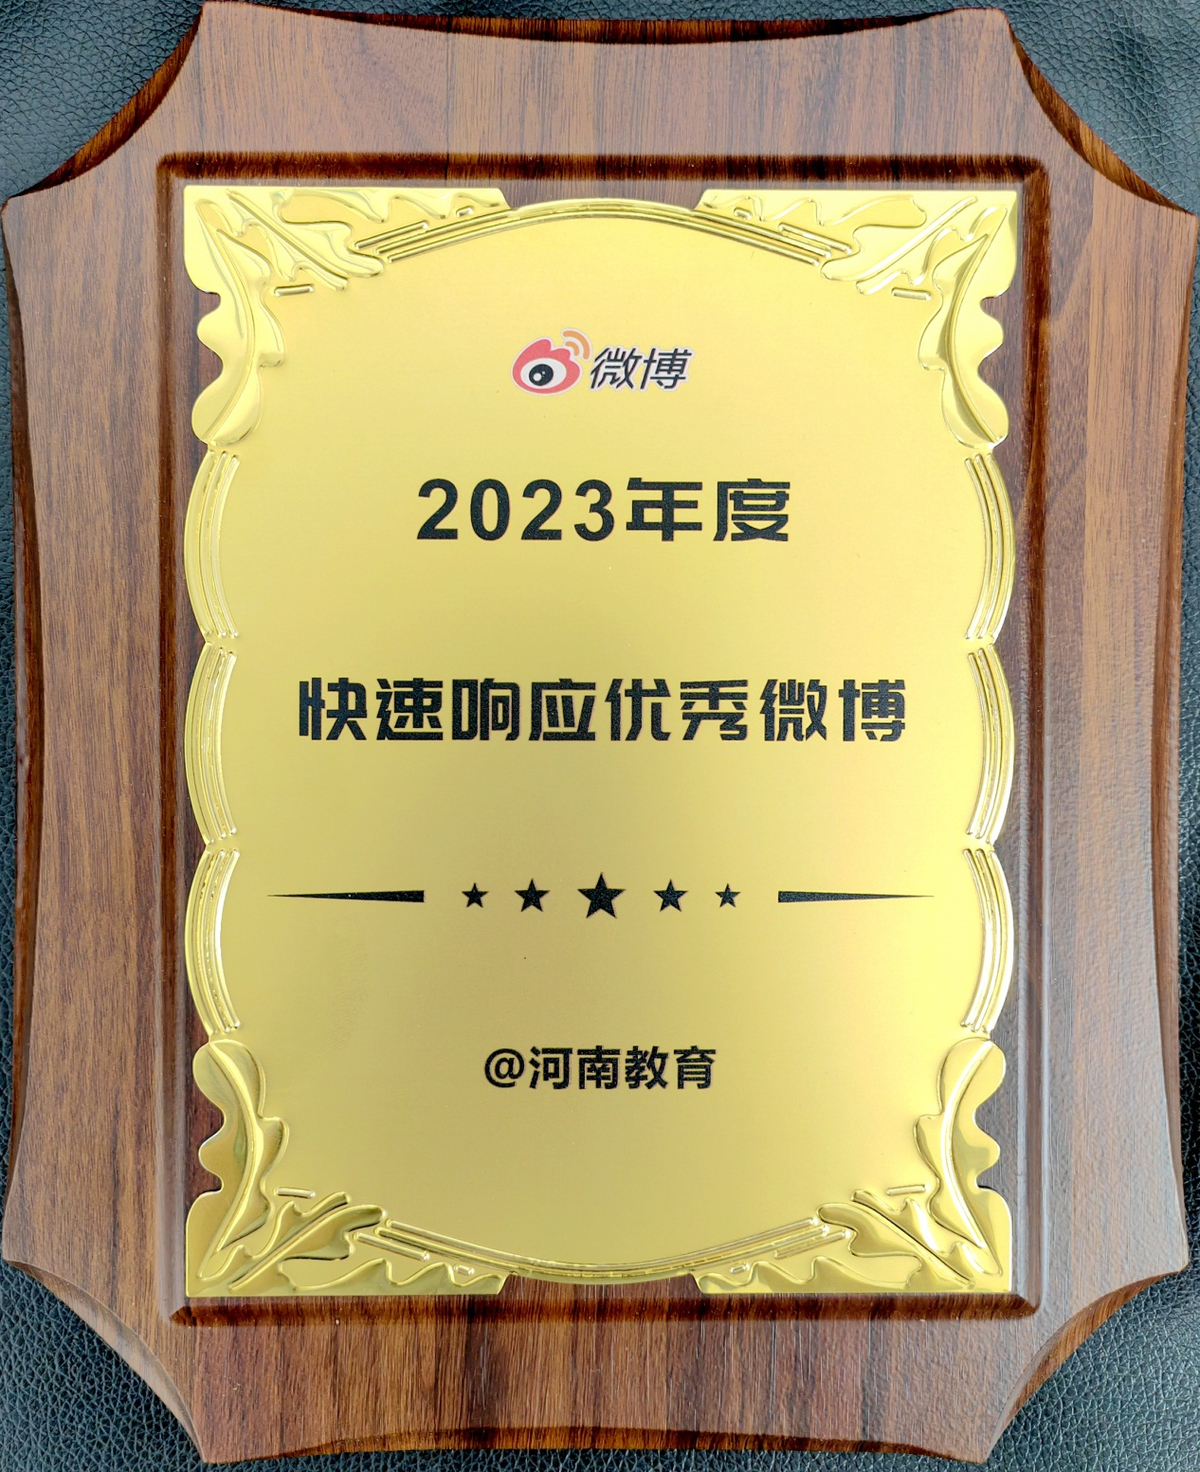 河南省教育厅微博荣获“2023年度快速响应优秀微博”